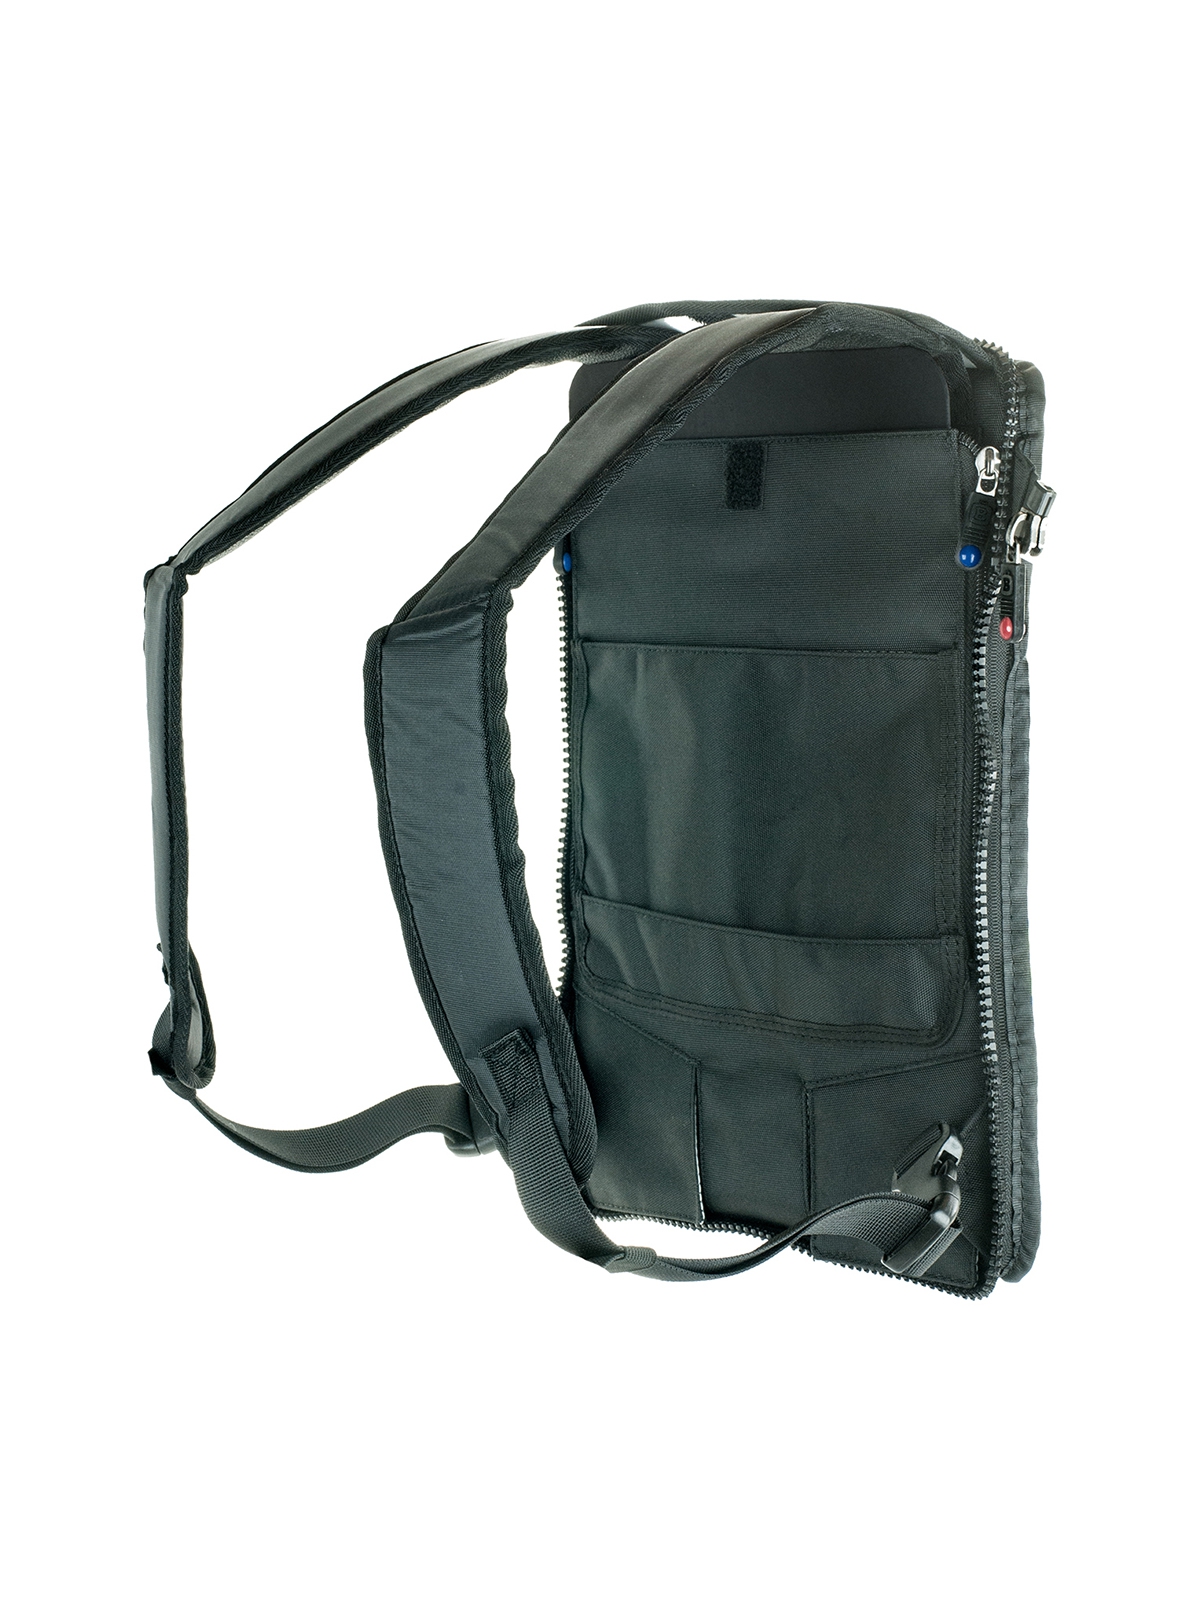 BrightLine FLEX Pack Cap Rear (KCR) - for B0, B2 or B4 Bags